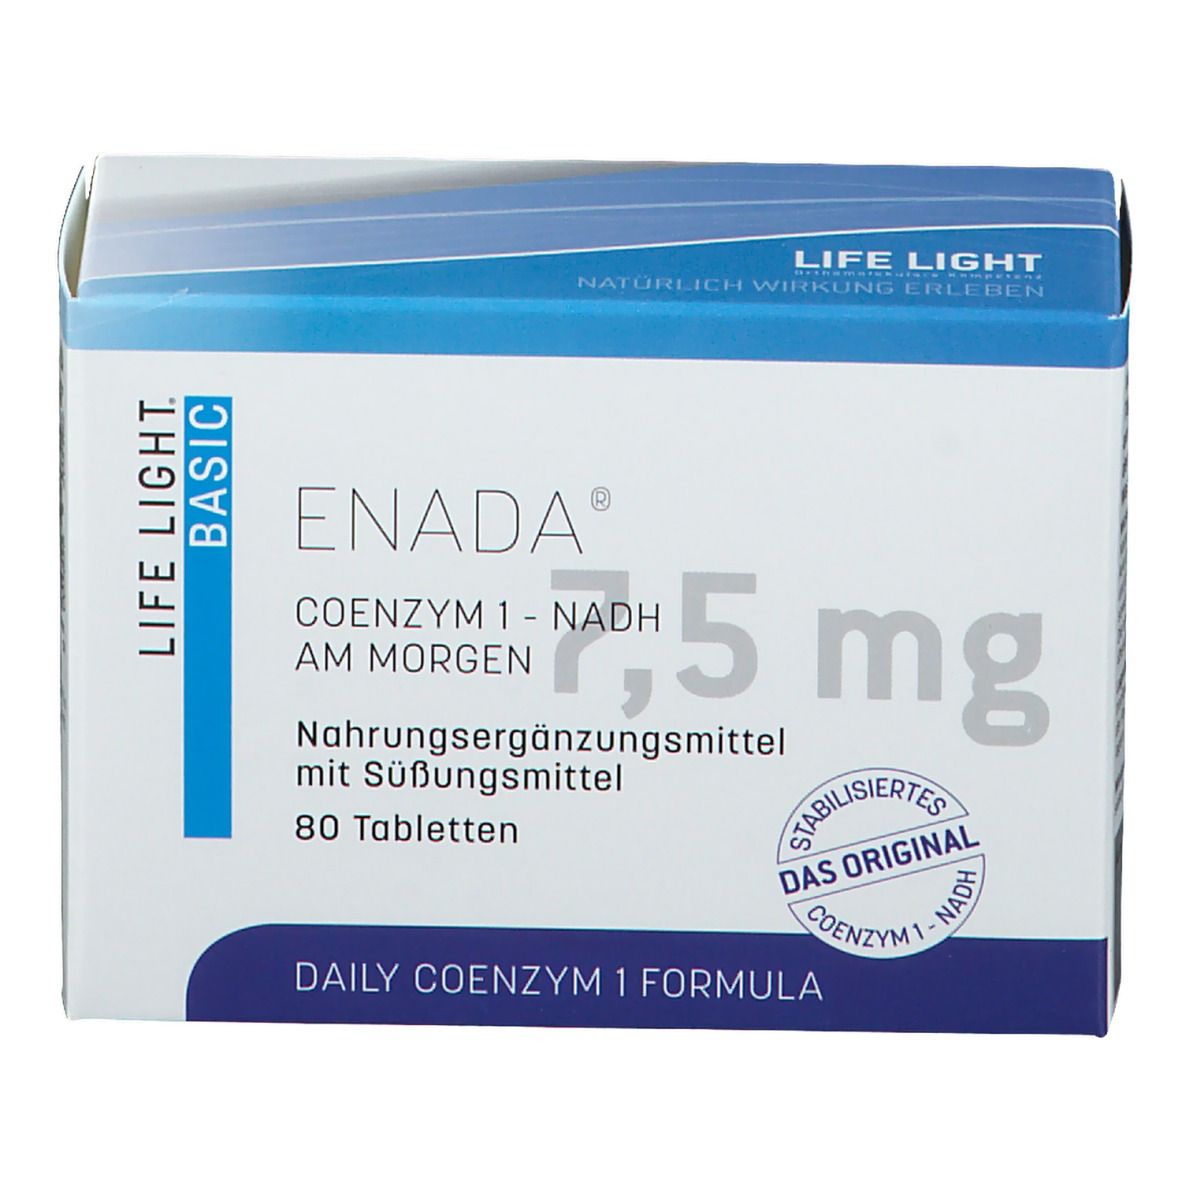 LIFE LIGHT ENADA® Coenzym 1-NADH